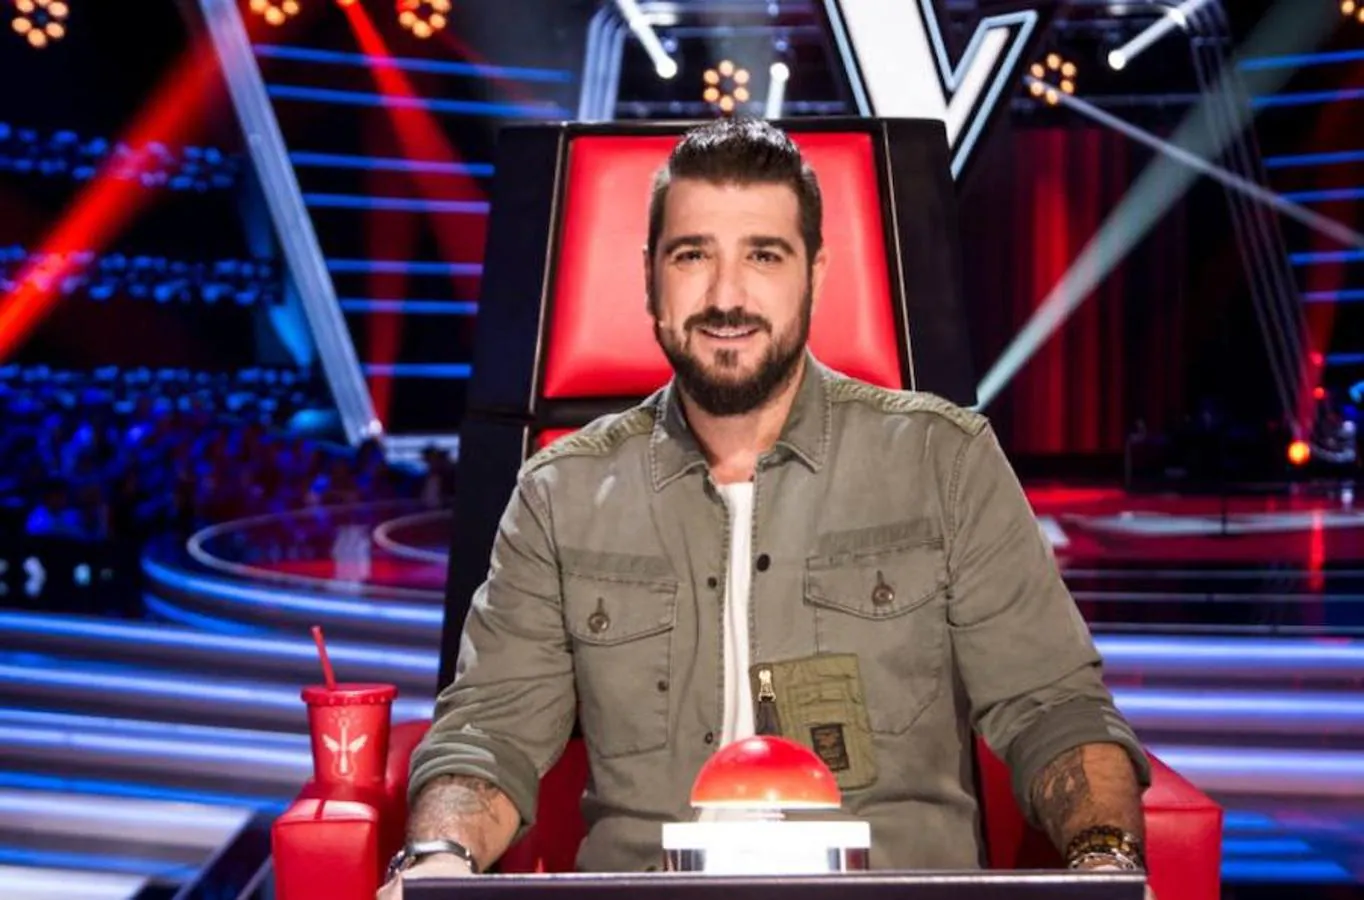 Antonio Orozco es coach en la nueva edición de 'La Voz' en Antena 3. También participó en las ediciones de 2013 y 2015 en Telecinco.